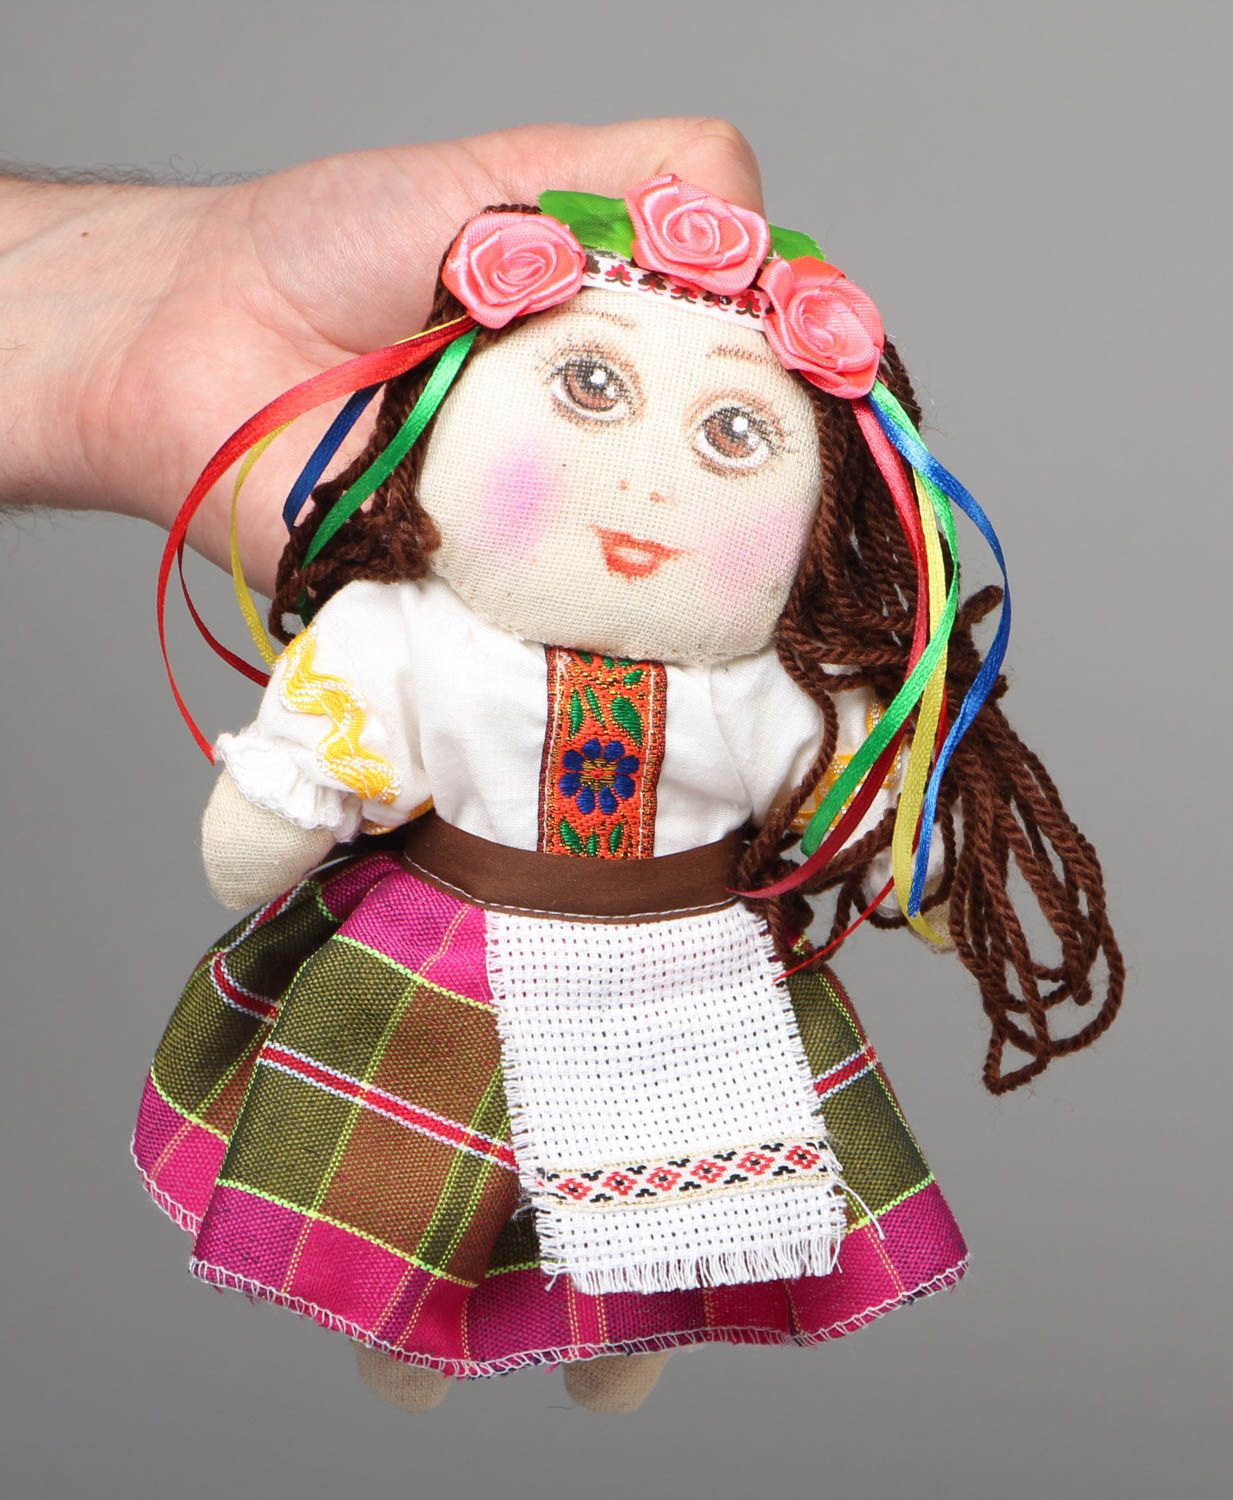 Textil Puppe handmade Ukrainerin foto 4